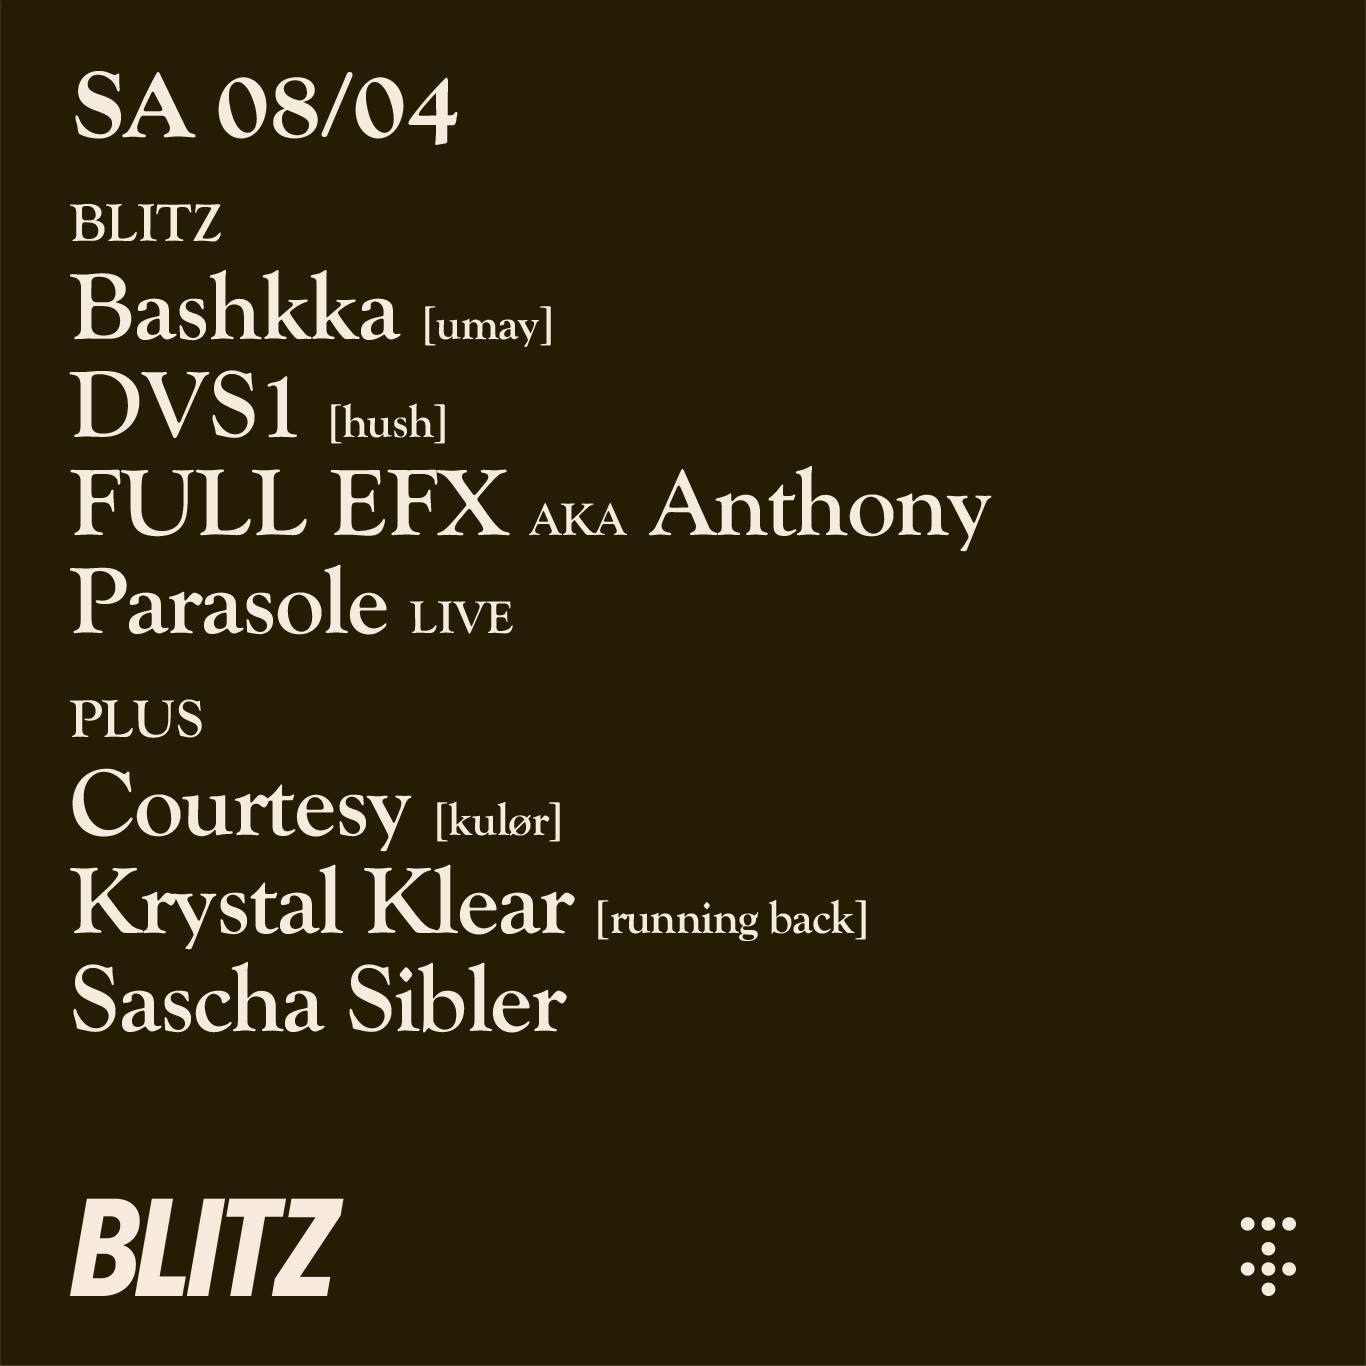 BLITZ with Bashkka, Courtesy, DVS1,FULLEFX aka AnthonyParasole, Krystal Klear, SaschaSibler - フライヤー裏